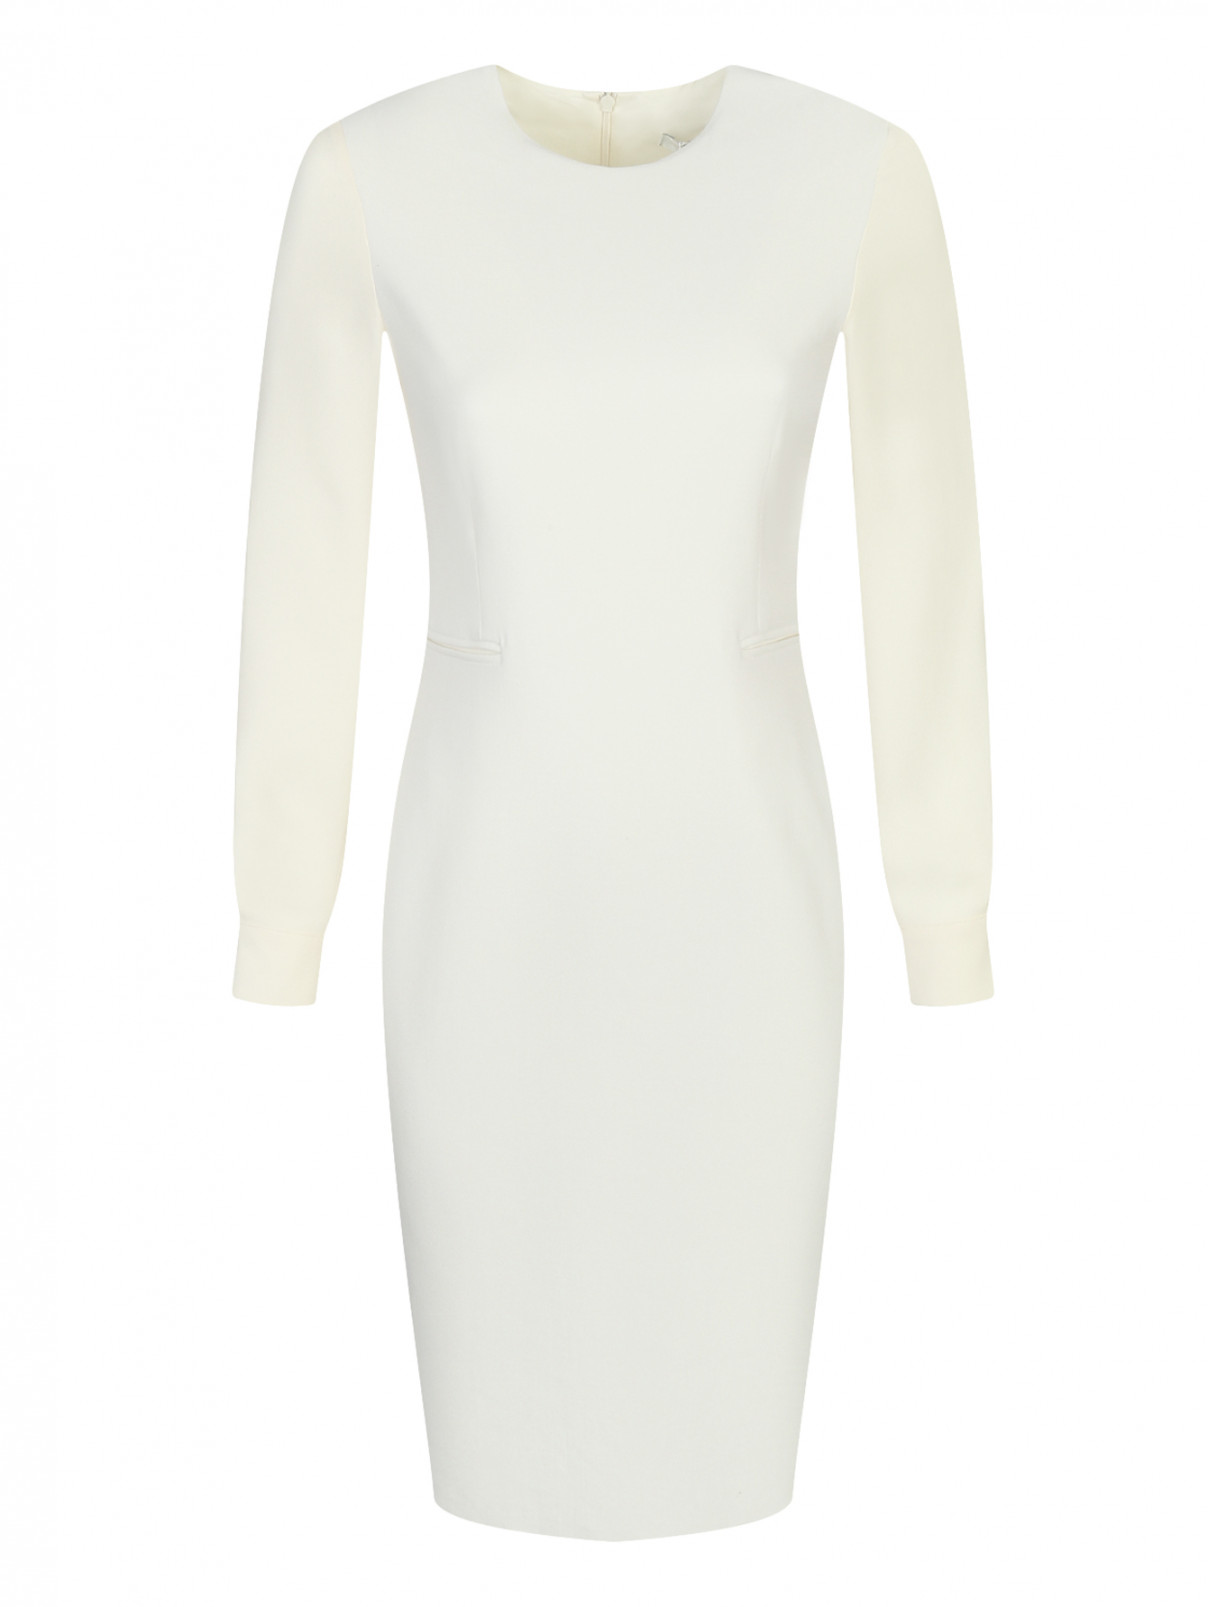 Платье-футляр из шерсти Max Mara  –  Общий вид  – Цвет:  Белый